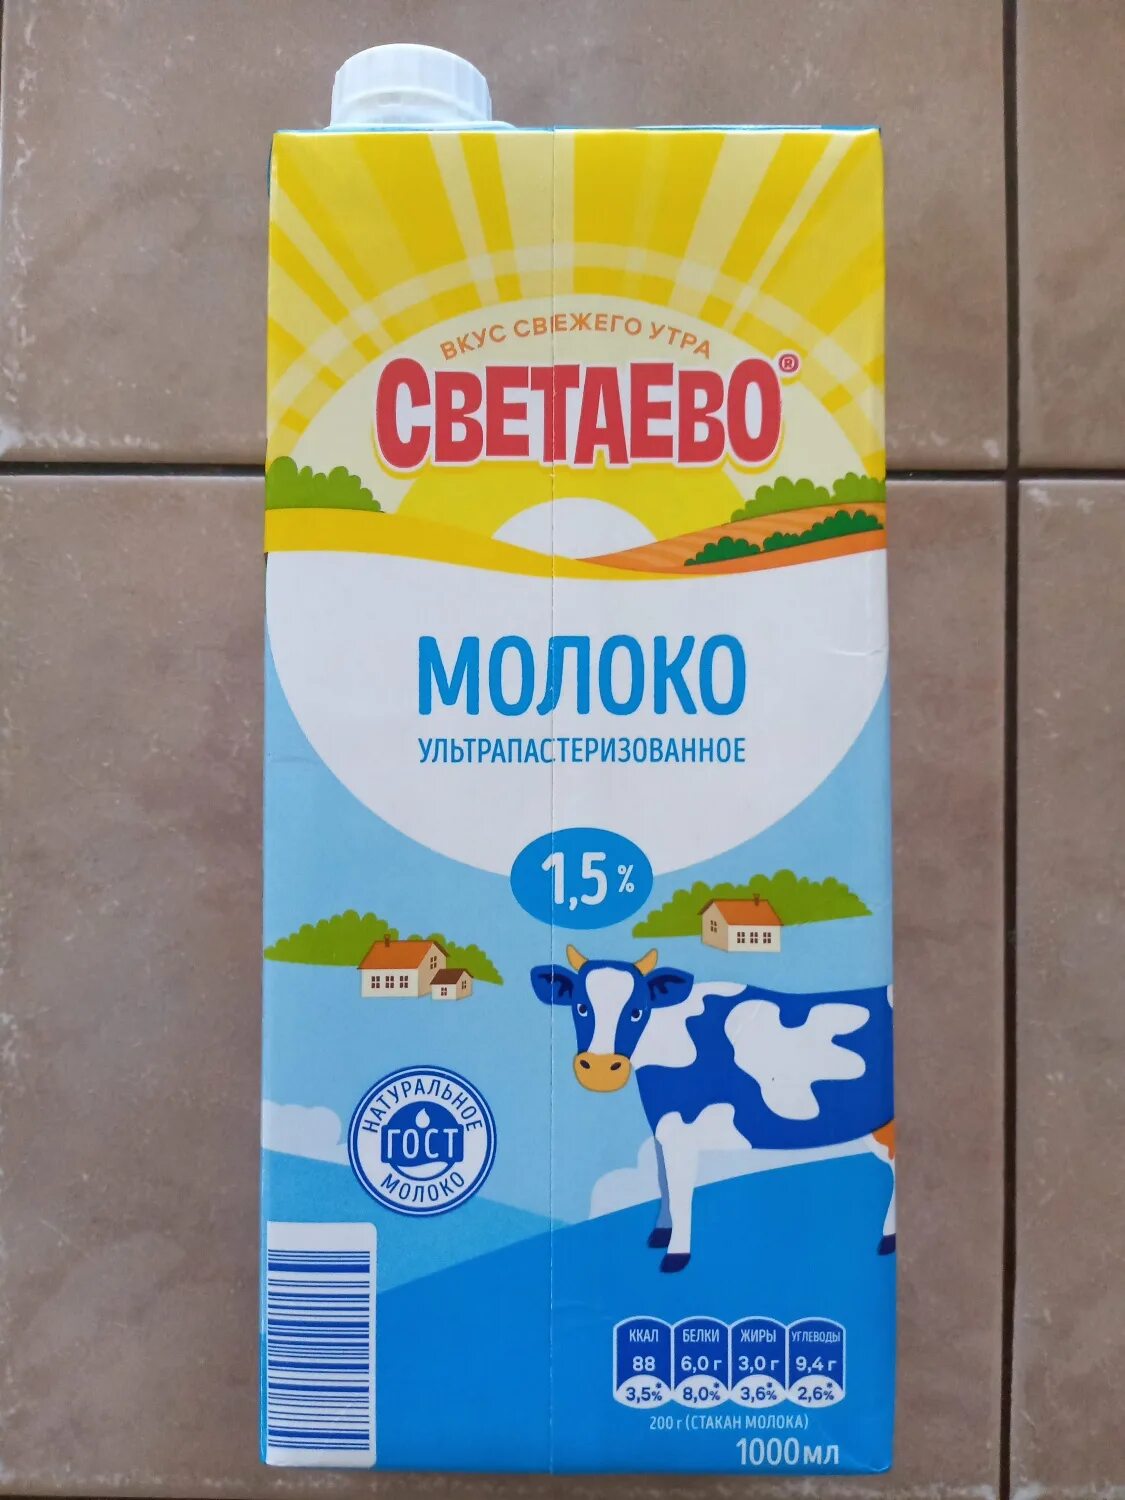 Светаево продукты. Молоко дешевое. Самое дешевое молоко. Продукция светаево молочная продукция. Молочная продукция в Чижике.